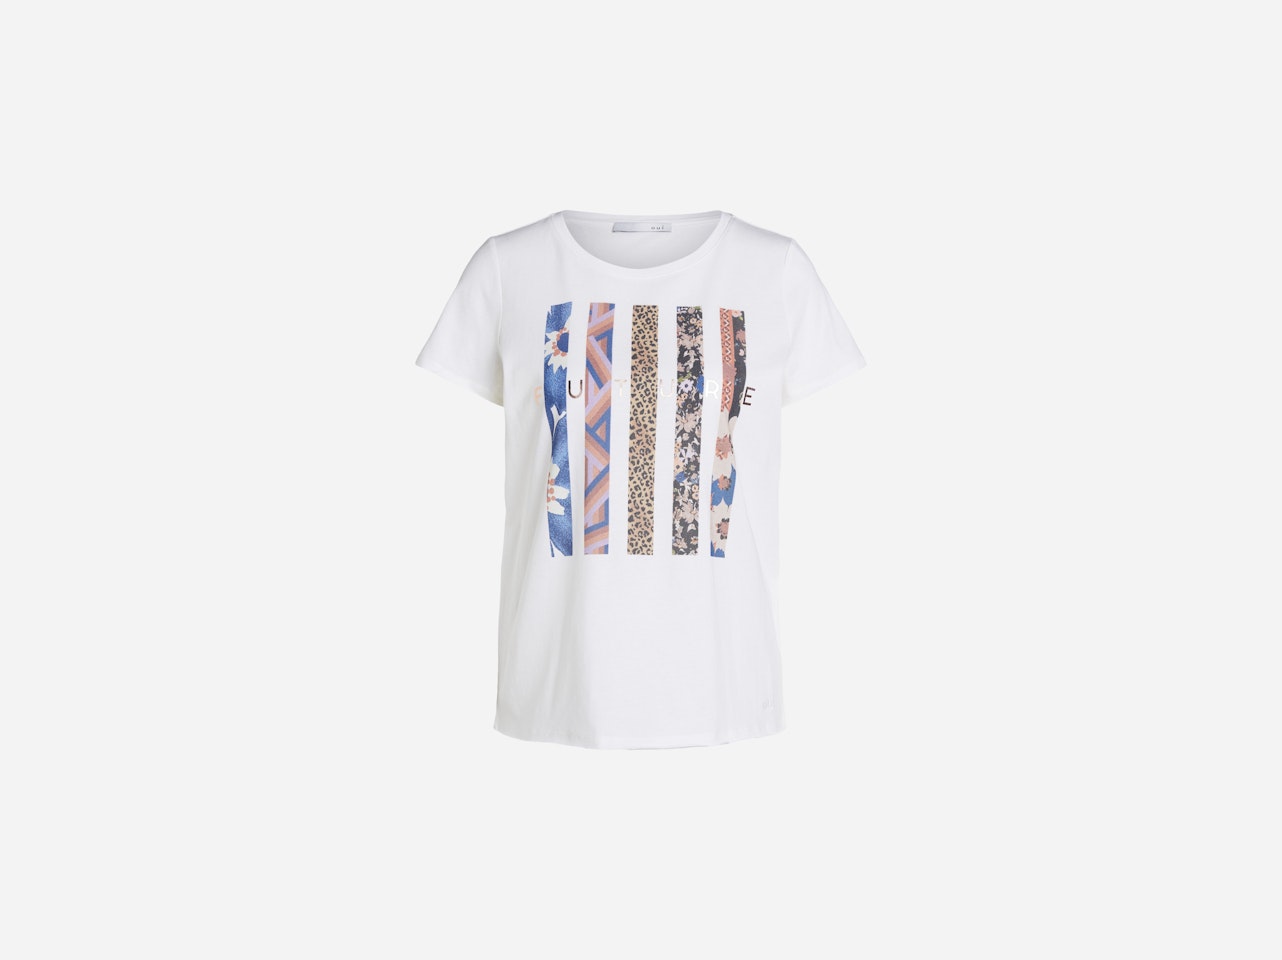 Bild 7 von T-shirt with collage motif in cloud dancer | Oui